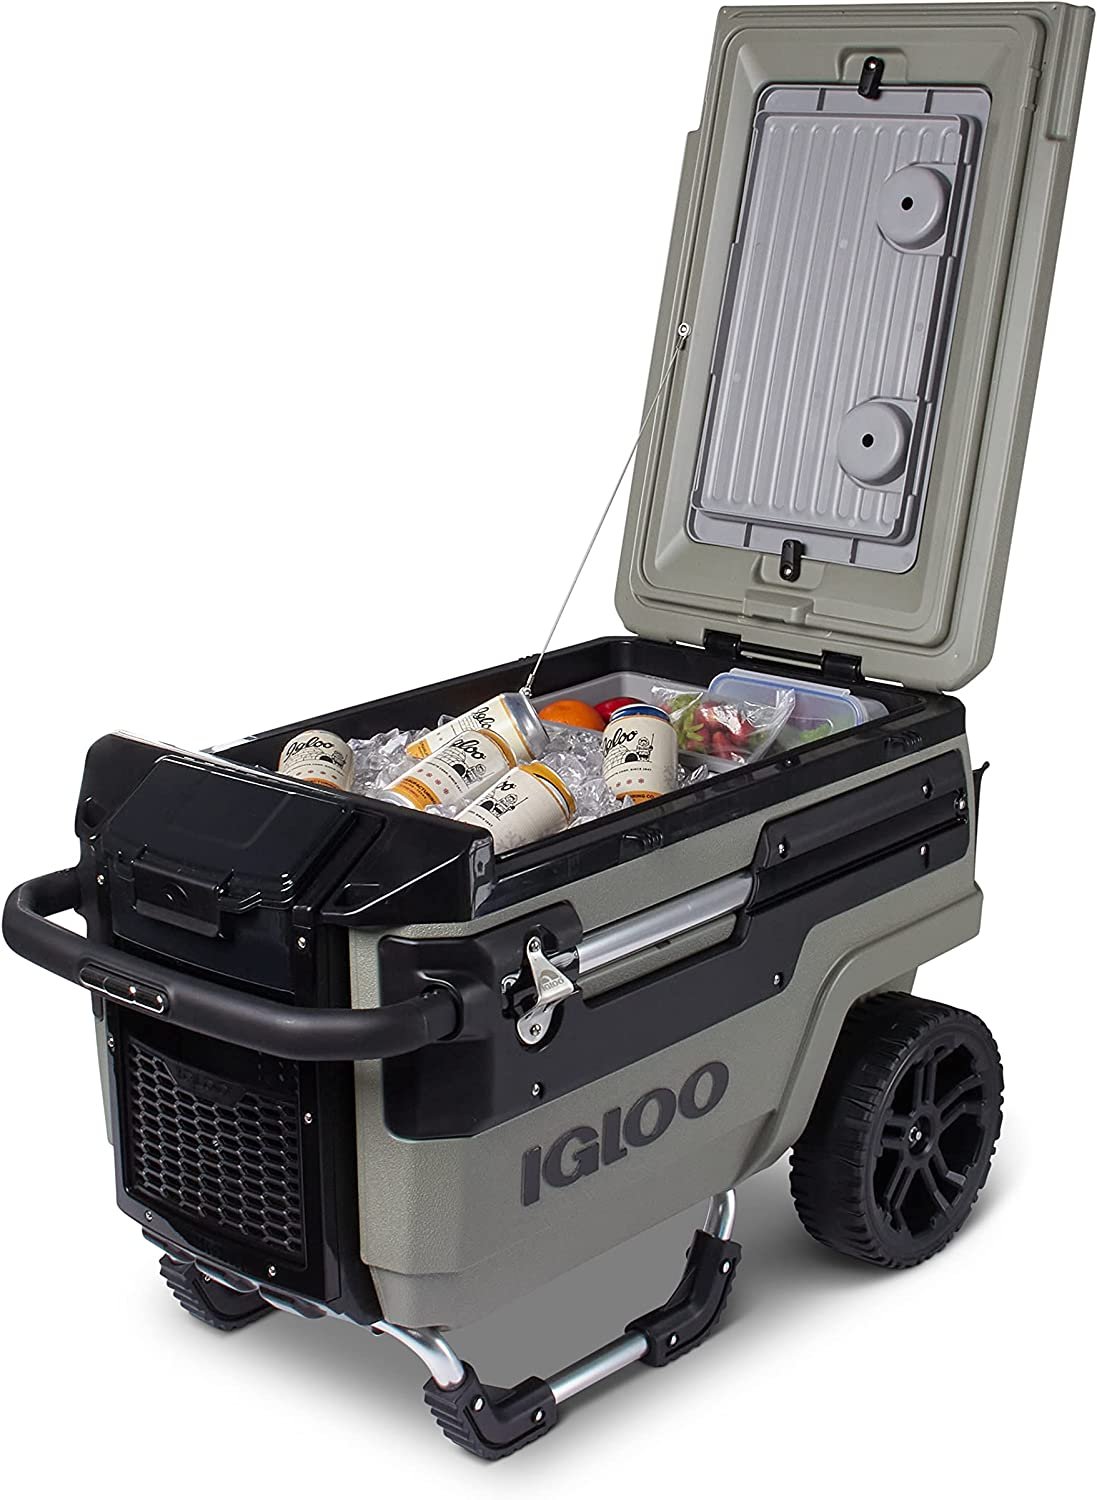 Igloo 70-Qt Trailmate Wheeled Rolling Cooler (Source: Amazon)